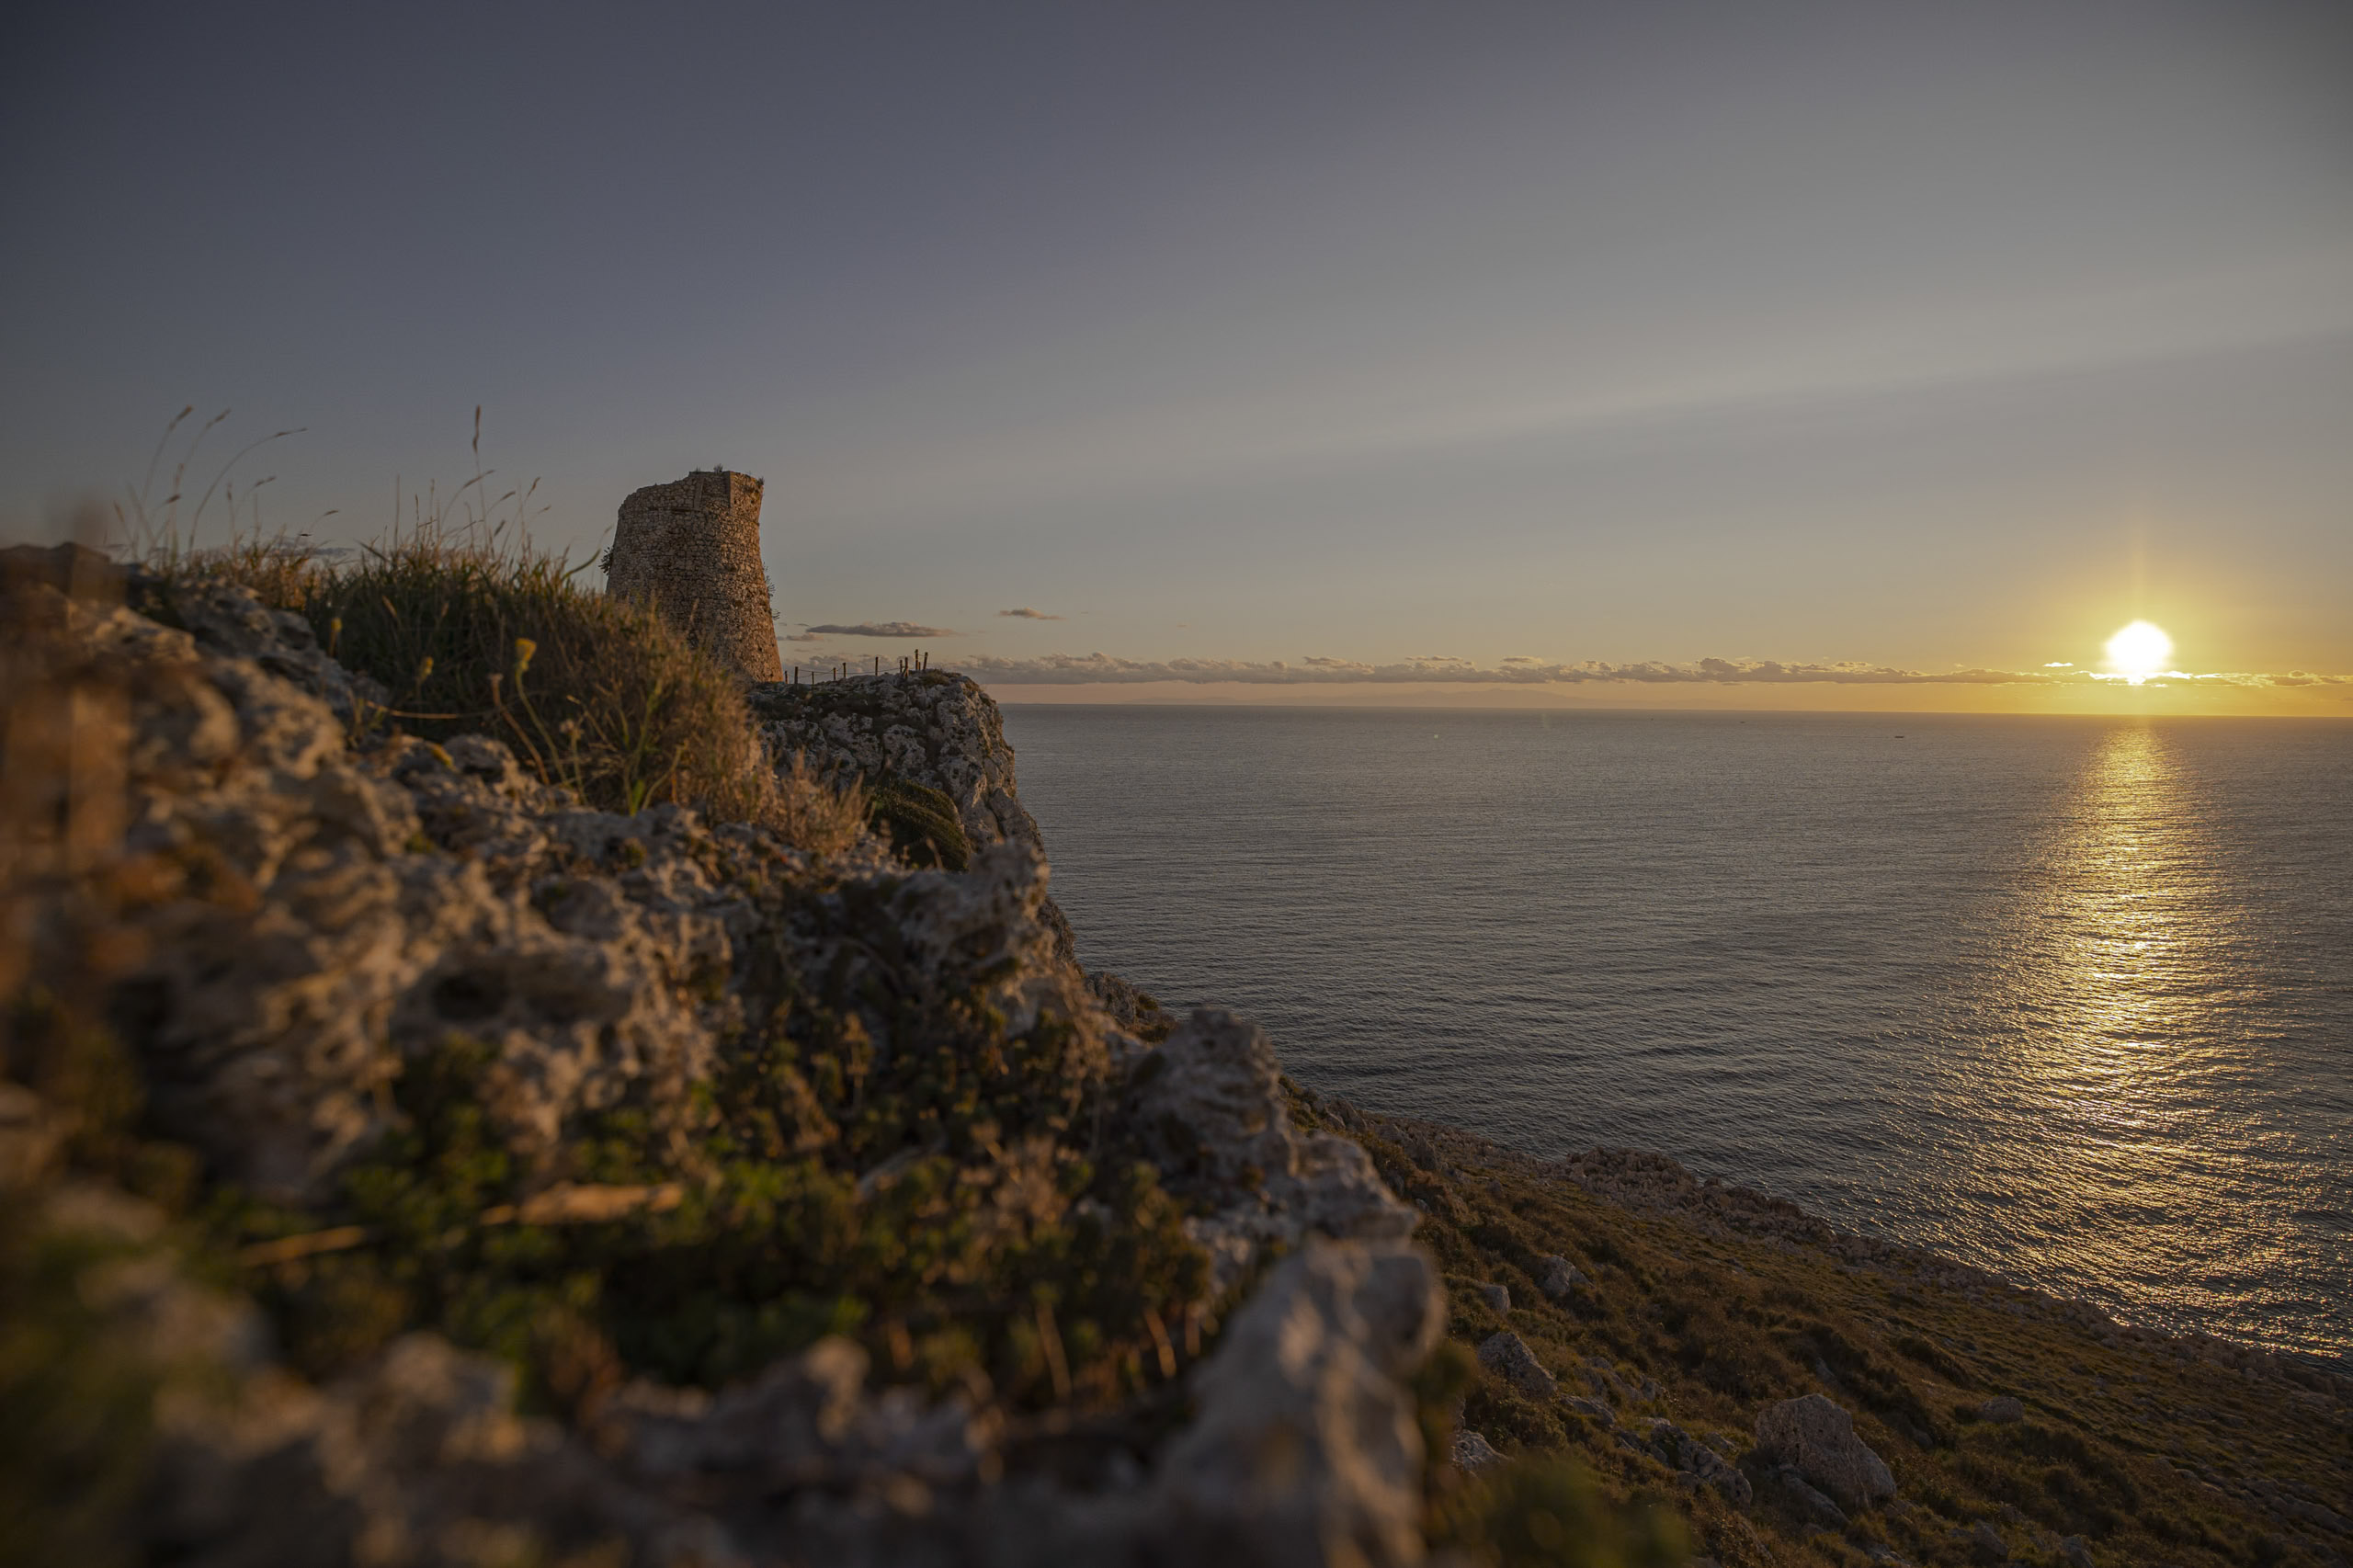 Alter Steinturm auf einer Küstenklippe bei Sonnenuntergang, die Sonne steht tief am Horizont und spiegelt sich im Meer. Warmes, goldenes Licht erhellt die Szene. © Fotografie Tomas Rodriguez